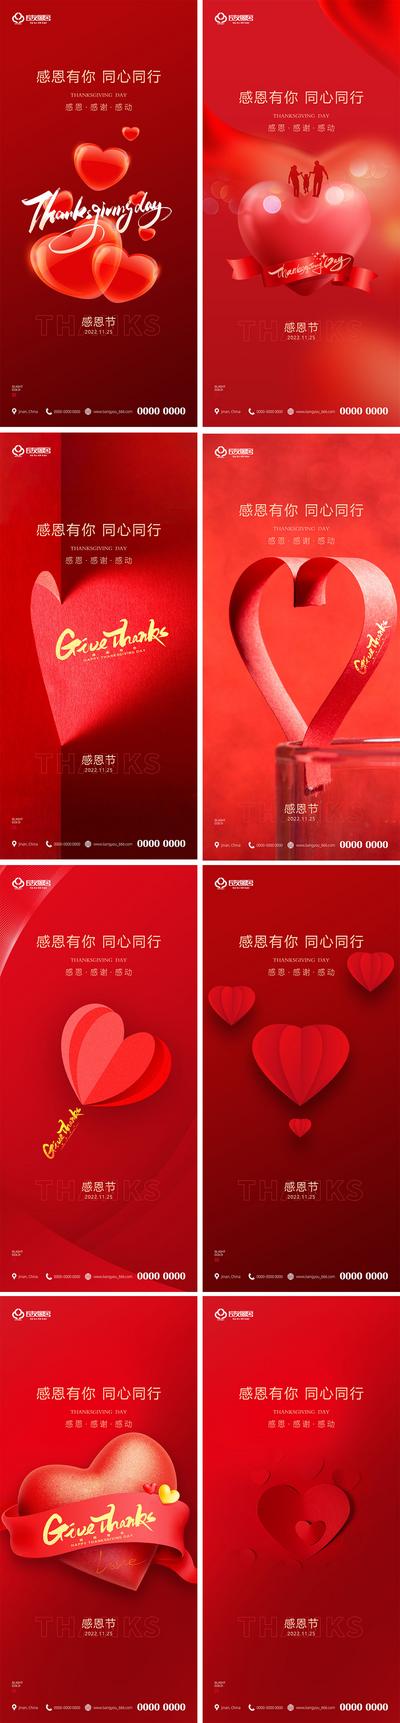 南门网 海报 地产 公历节日 感恩节  红色 爱心 系列